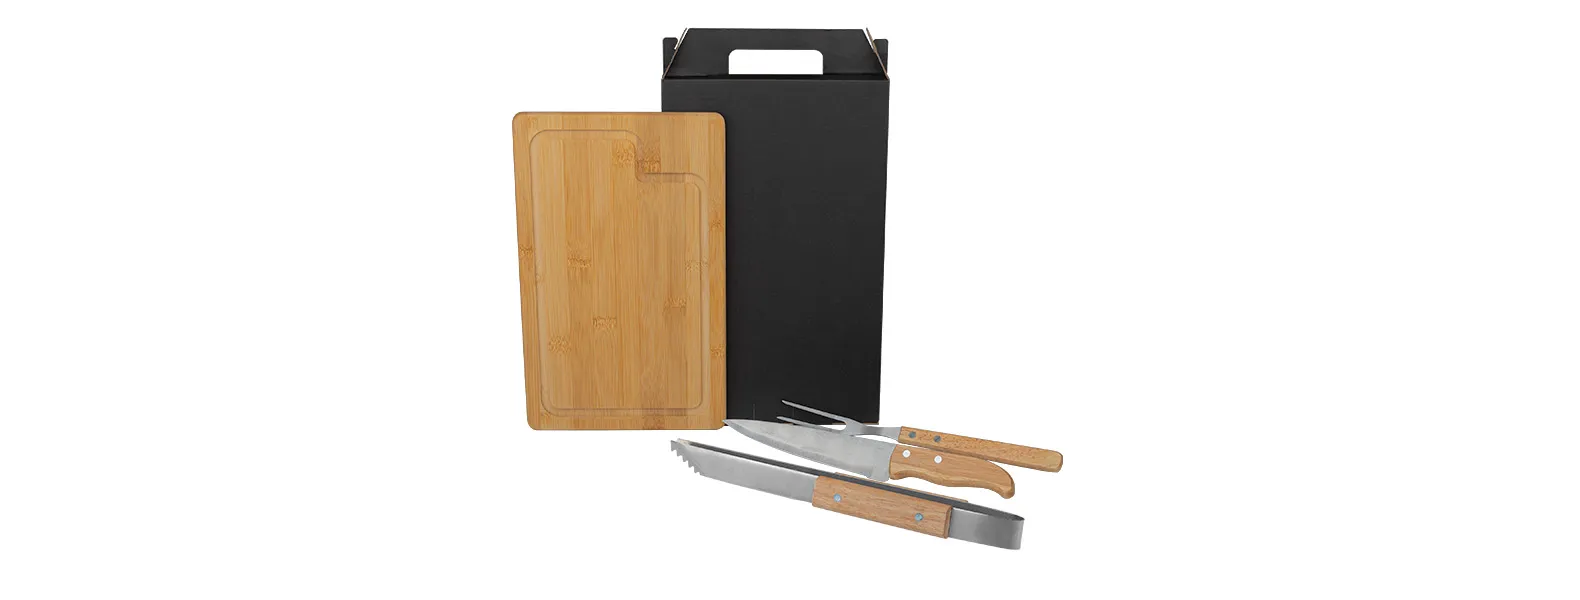 Kit para churrasco com pegador. Conta com tábua em bambu; Faca 7, garfo e pegador em aço Inox/Madeira.